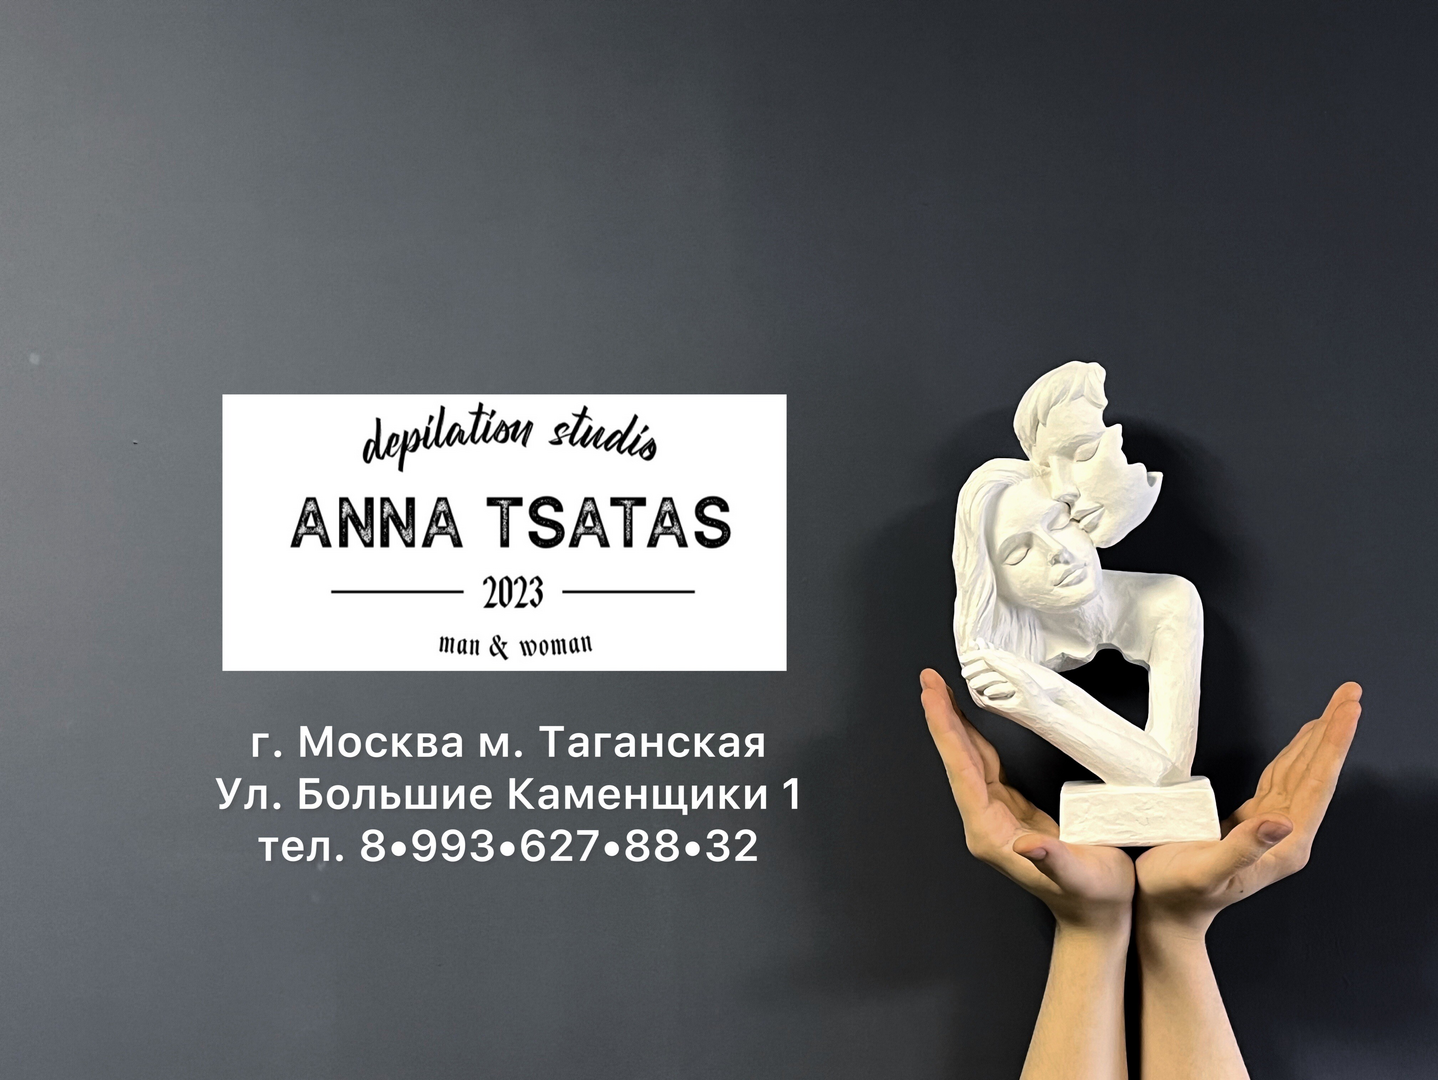 Anna Tsatas